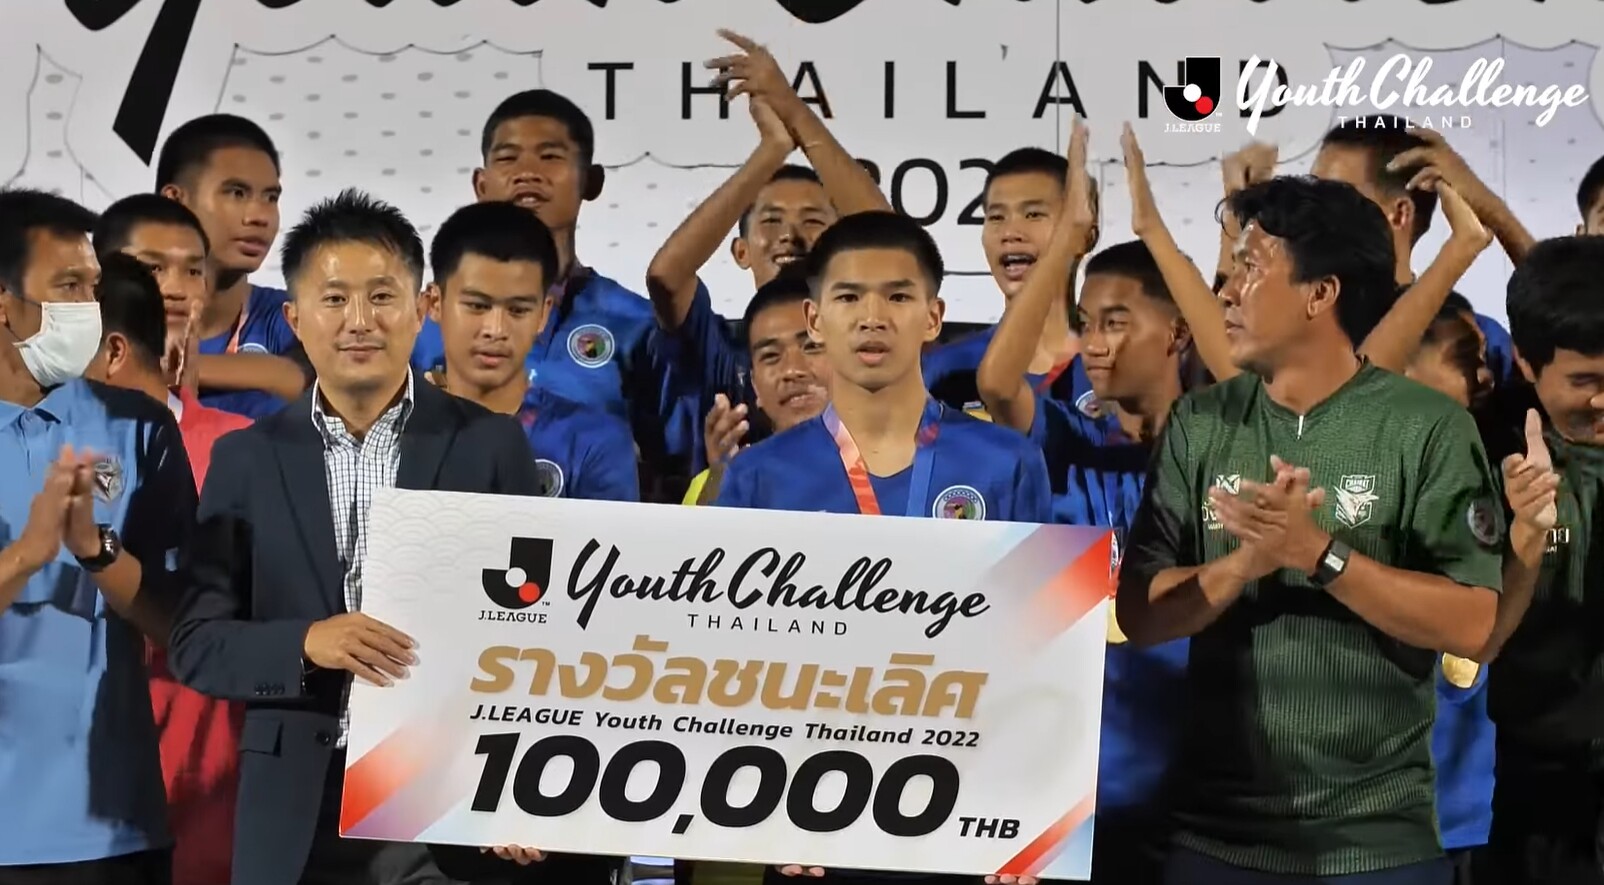 เจลีก ปลื้มกระแสตอบรับการแข่งขัน J.LEAGUE Youth Challenge Thailand หลัง รร.อบจ.ชัยนาท ผงาดแชมป์สมัยแรก